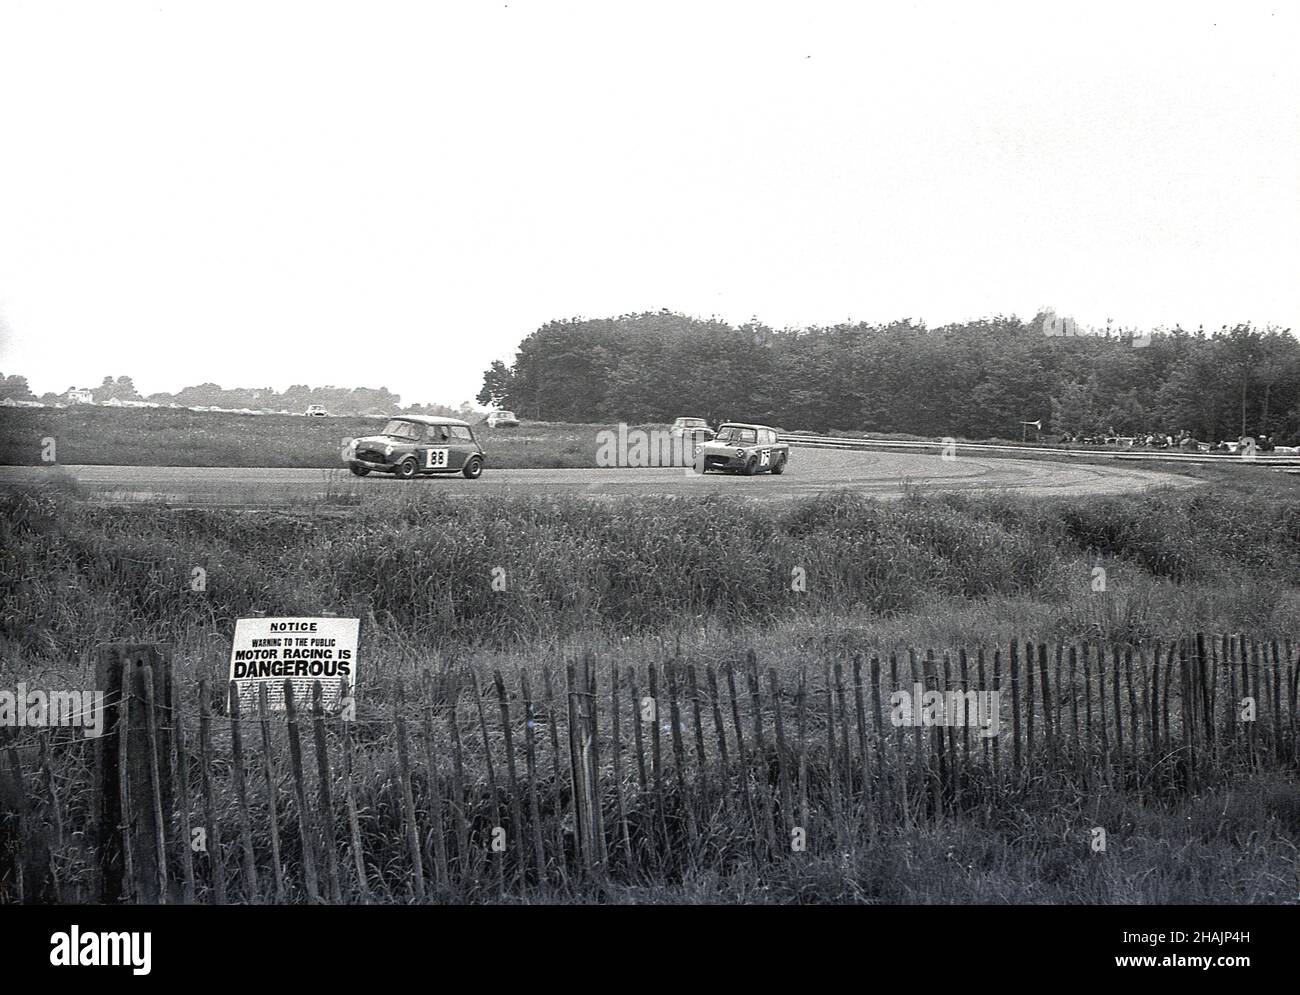 1960s, histórico, deporte de motor, carreras de coches, Inglaterra, REINO UNIDO. Lejos de la pista, un pequeño aviso en la hierba por una cerca de madera corta dice, Motor Racing es PELIGROSO. Foto de stock